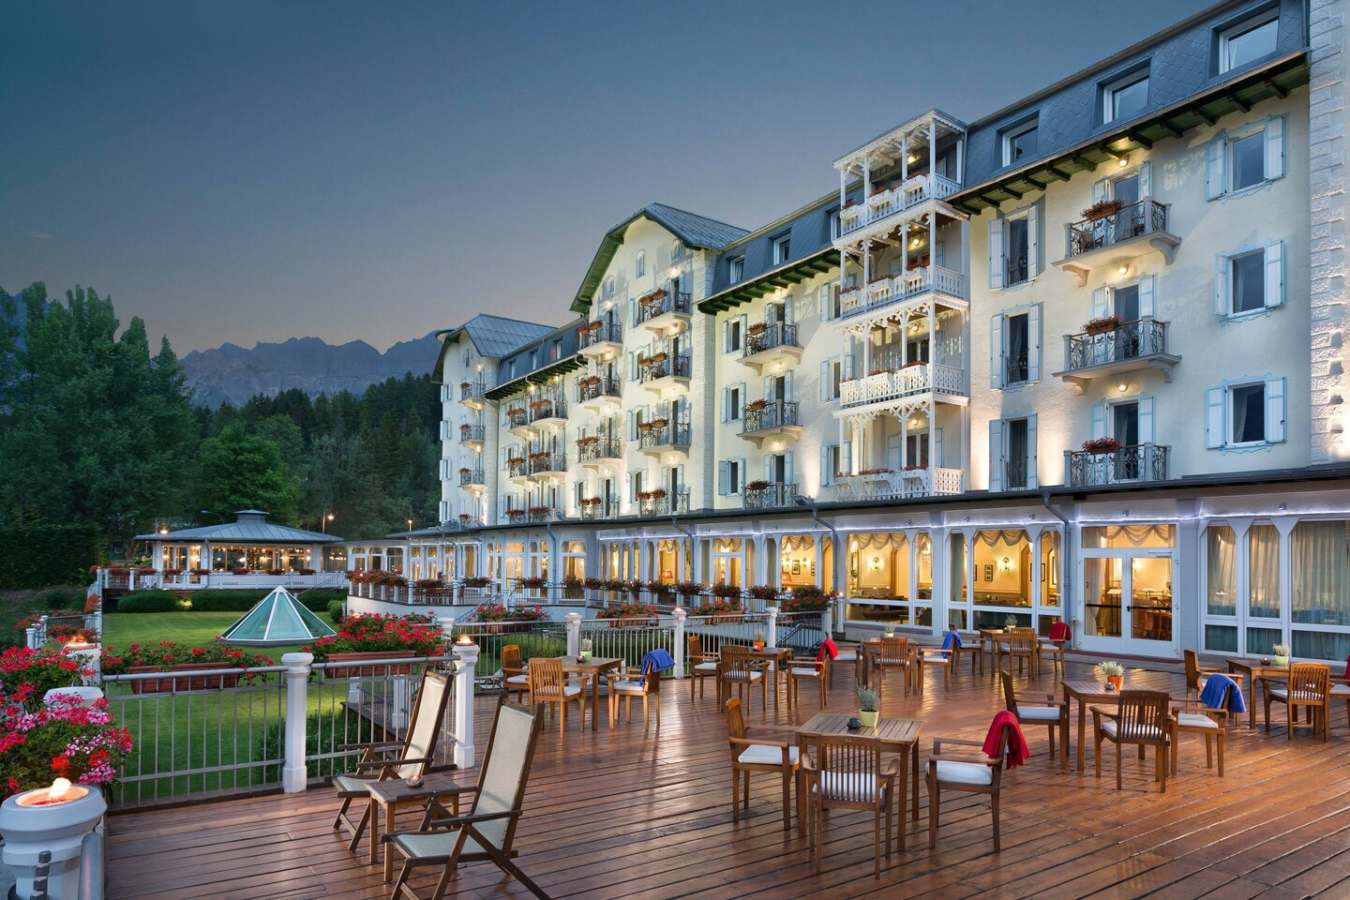 Cristallo Resort & Spa: immergiti nel relax di Cortina d’Ampezzo